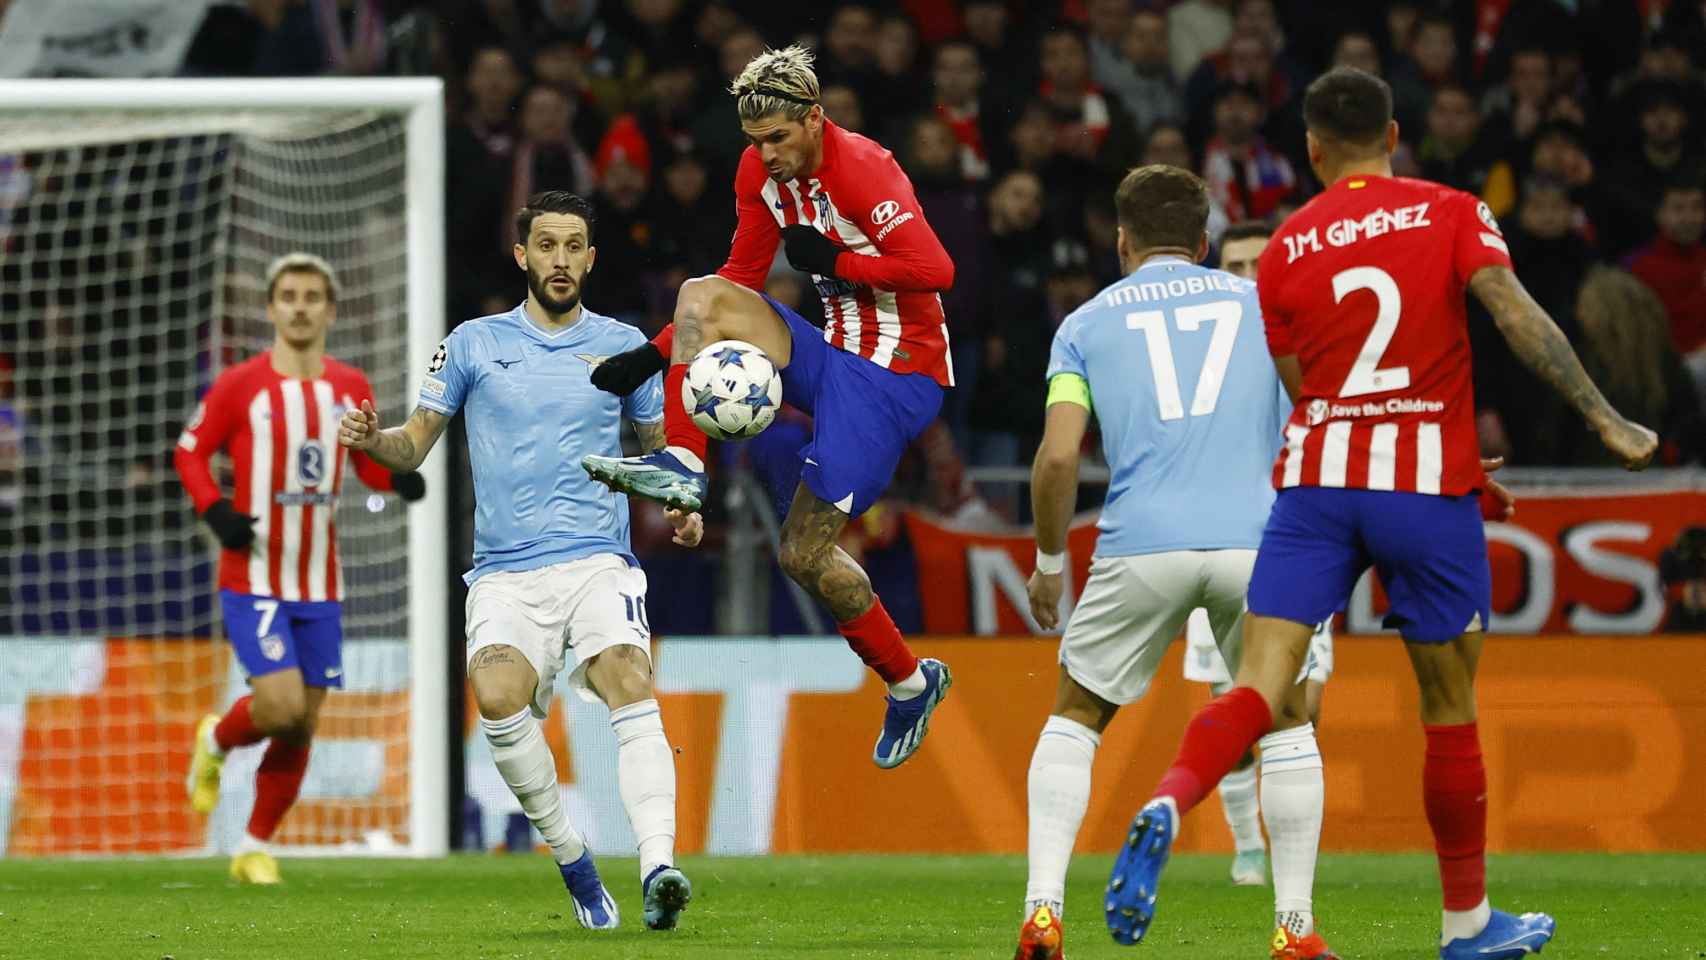 Atlético Madrid - Lazio, fútbol en directo: Griezmann y Lino dan el triunfo  y el liderato a los rojiblancos